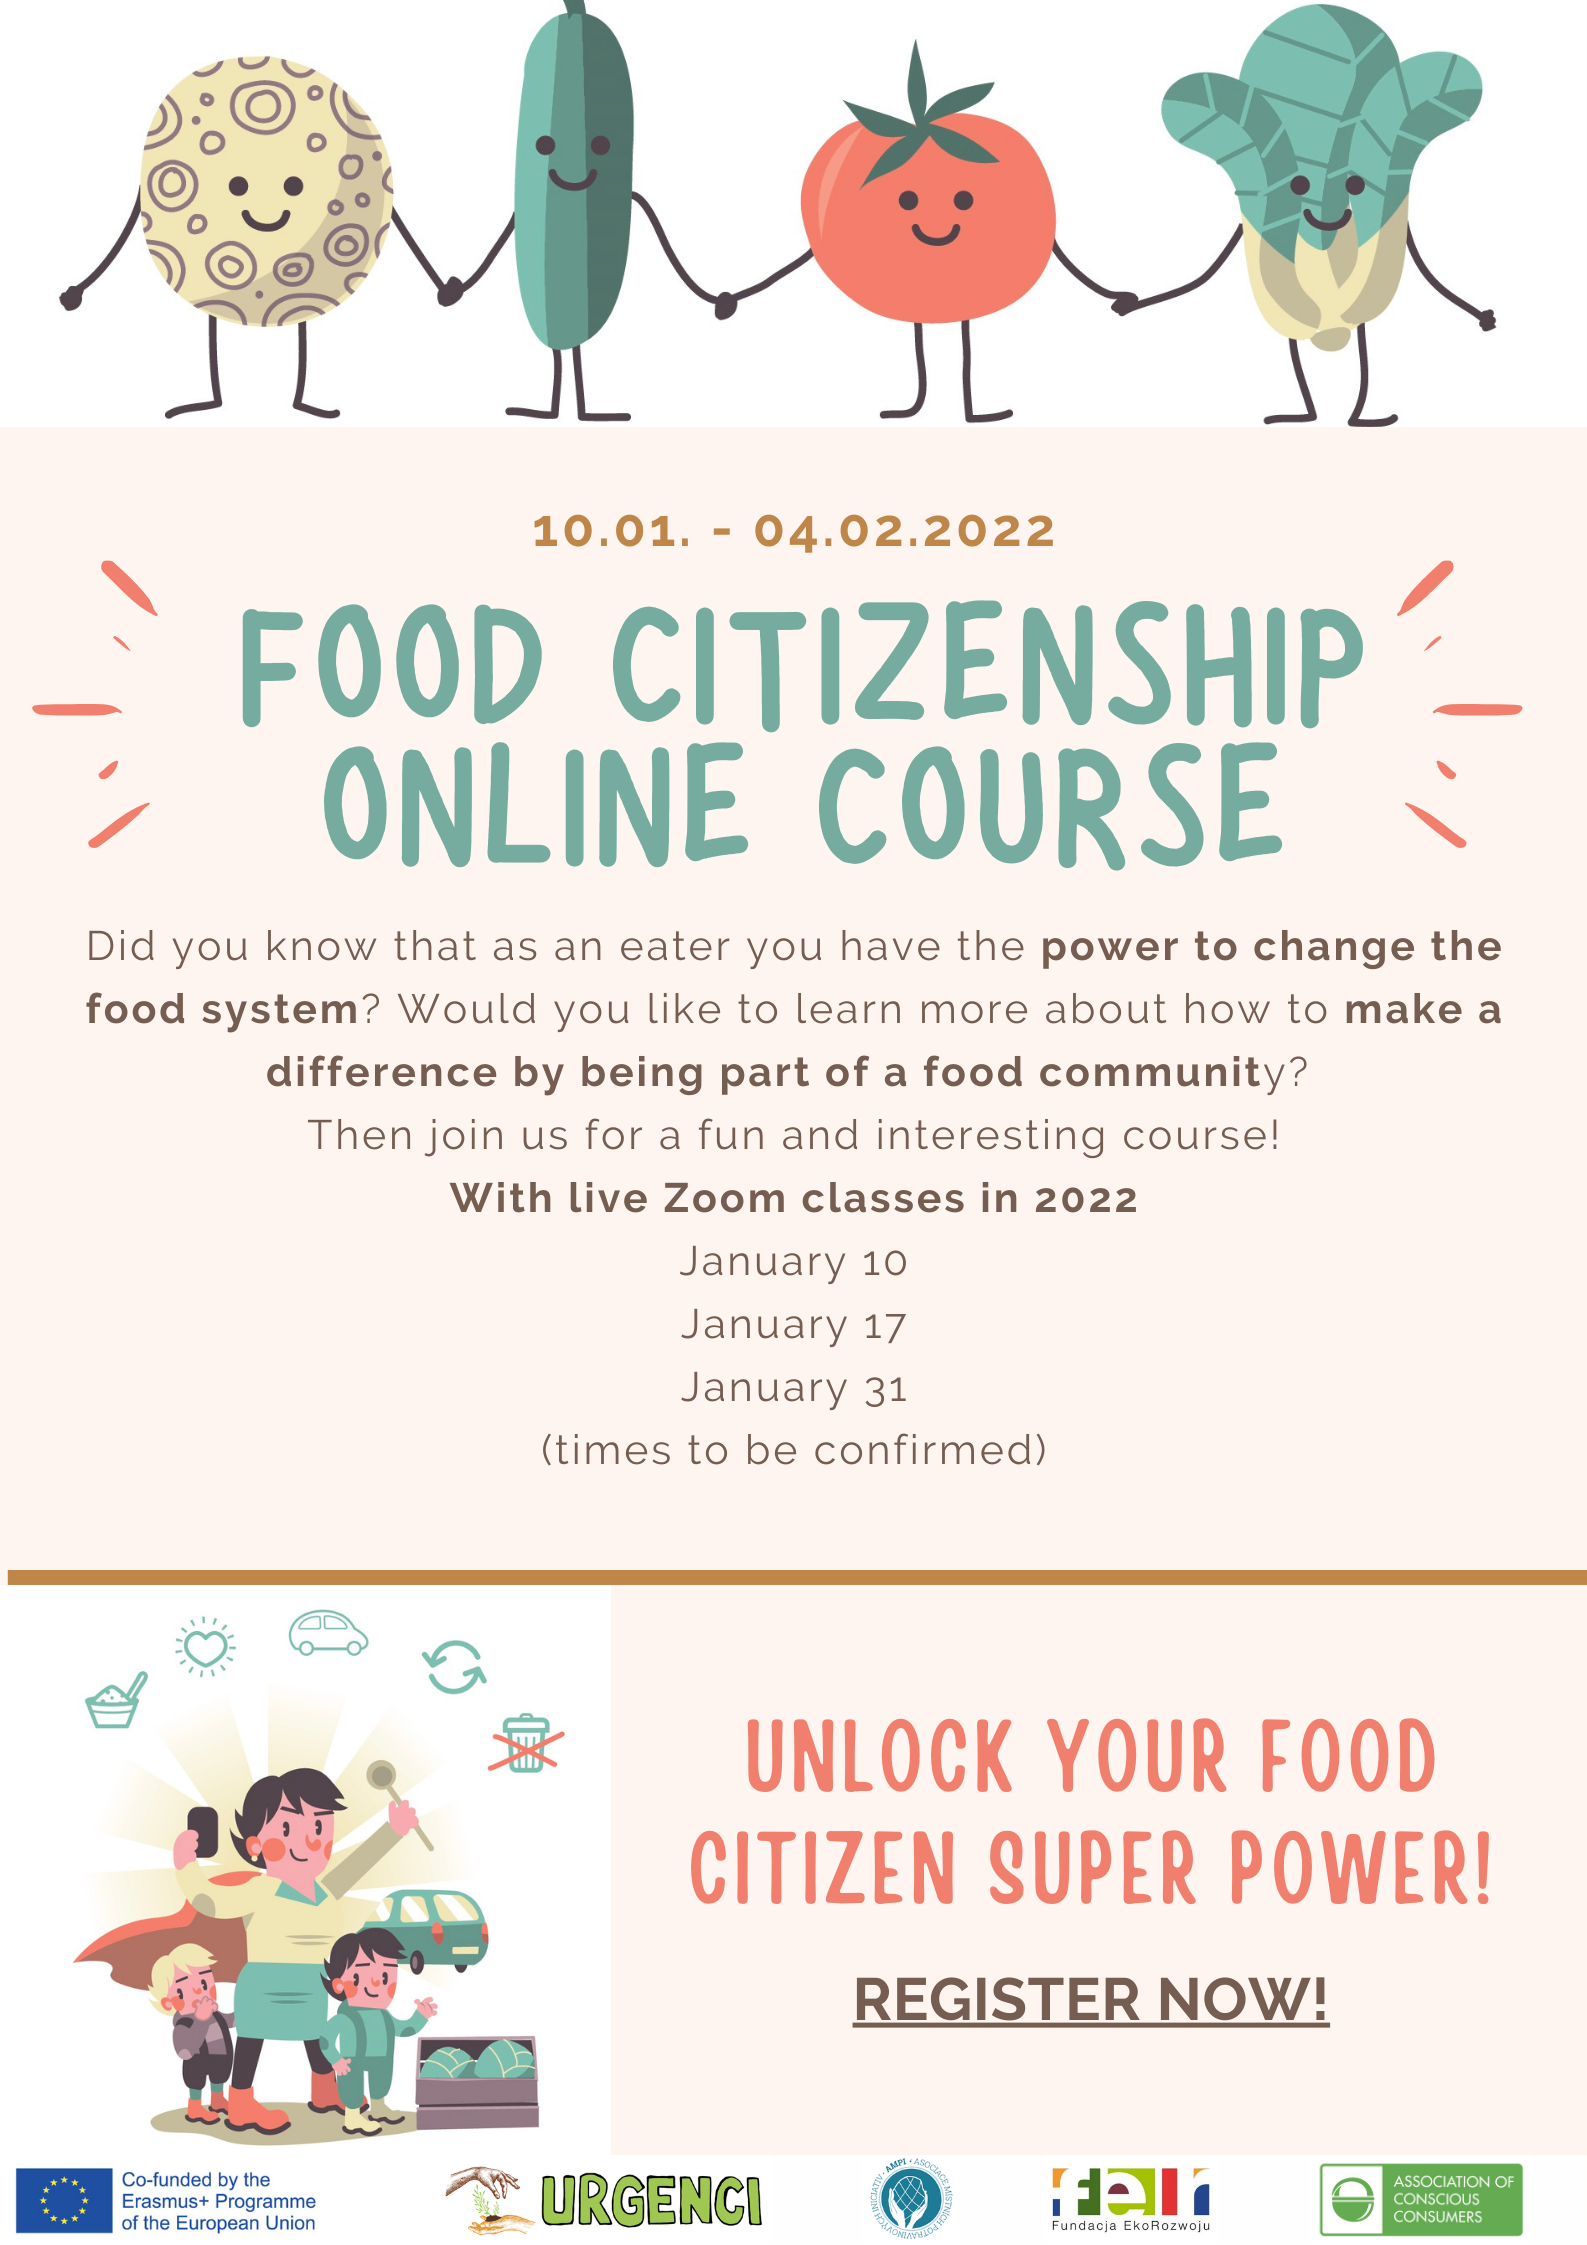 Online course: Unlock your food citizen super power! - Urgenci